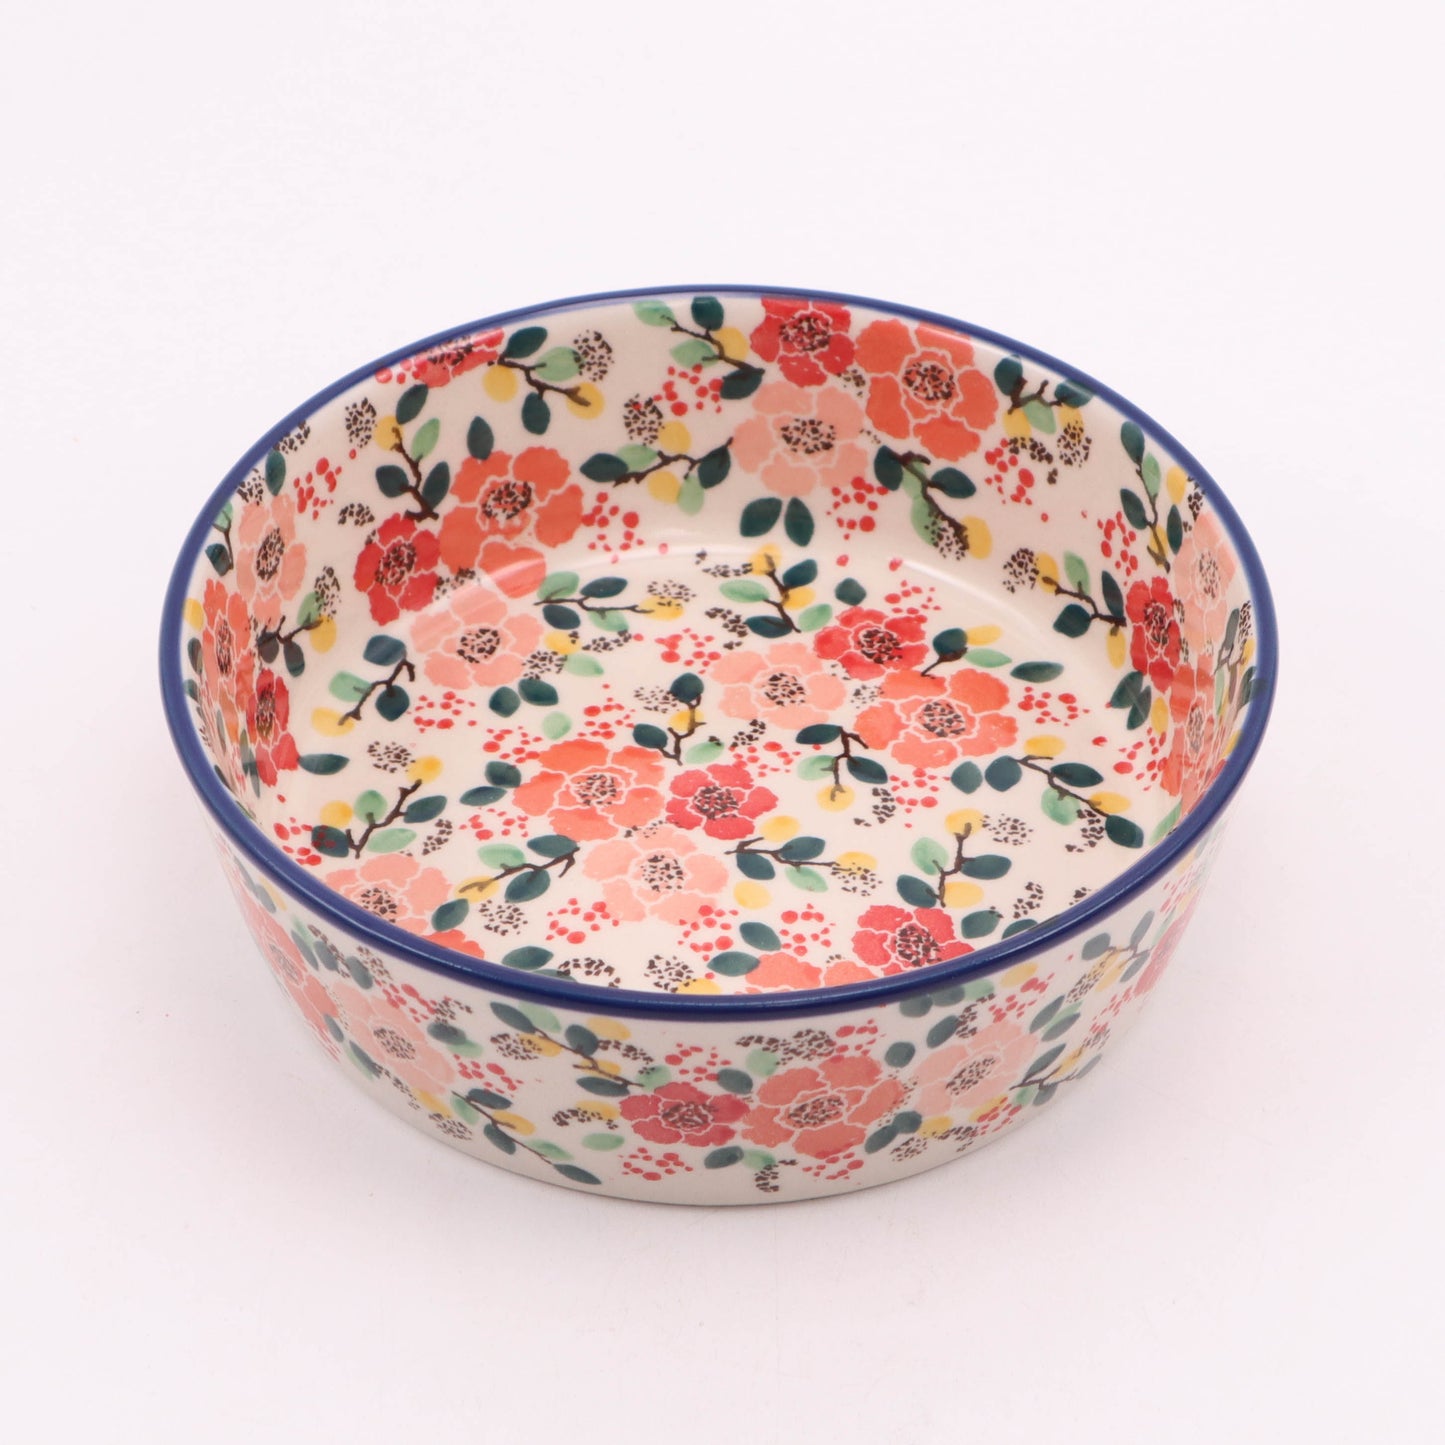 7"x2.5" Bowl. Pattern: Flower Shoppe